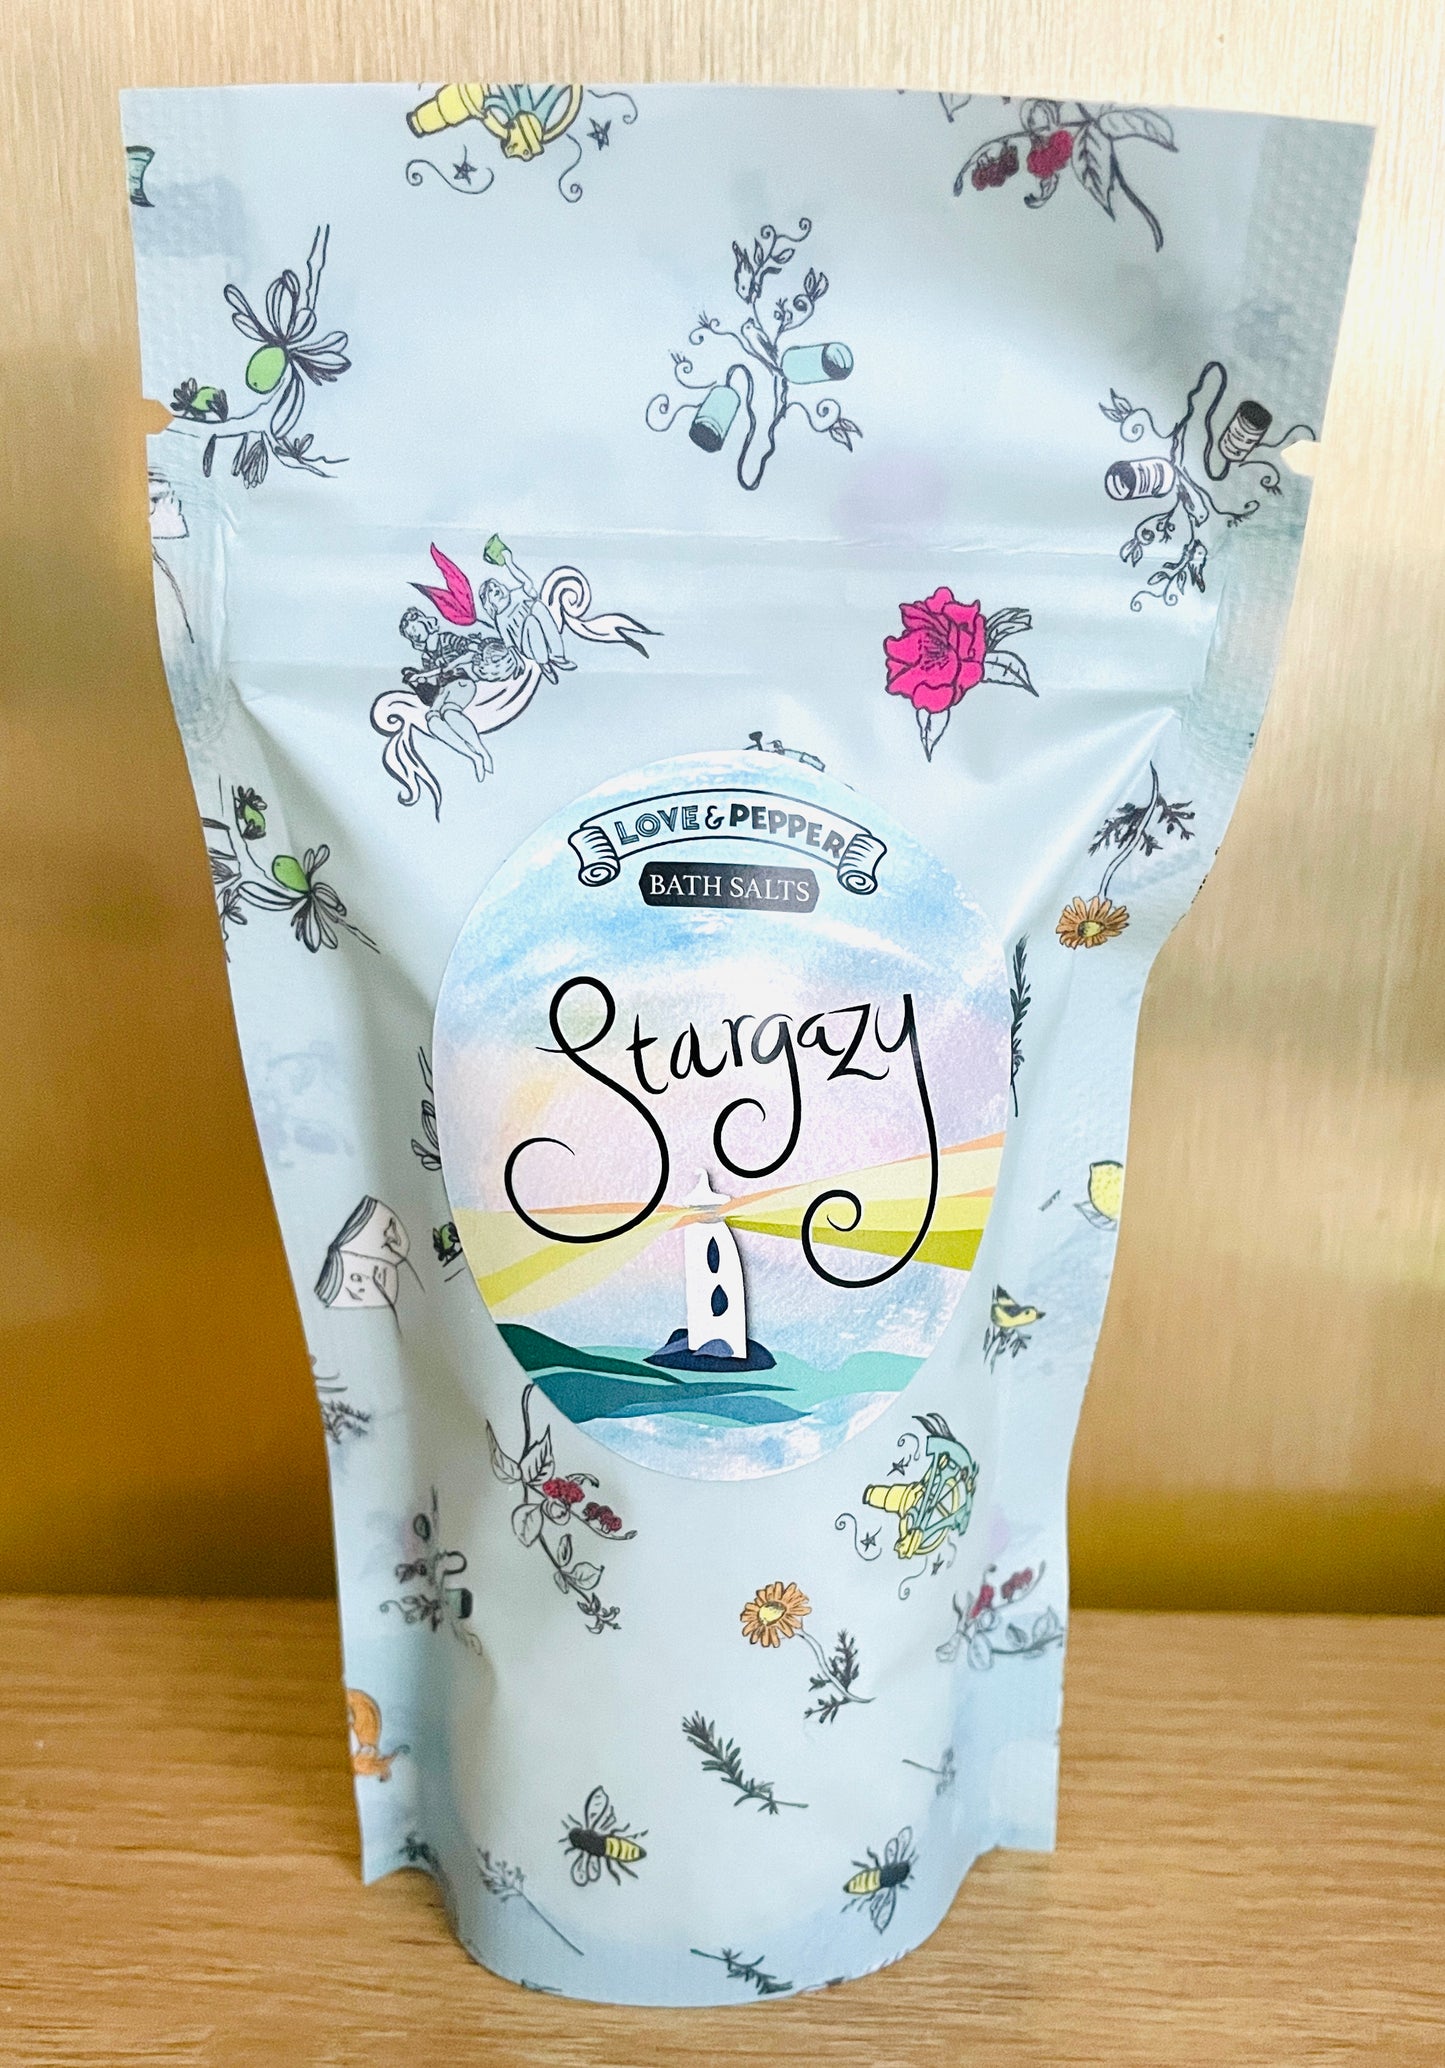 Stargazy - Citrus Spritz Bath Salt Pouch